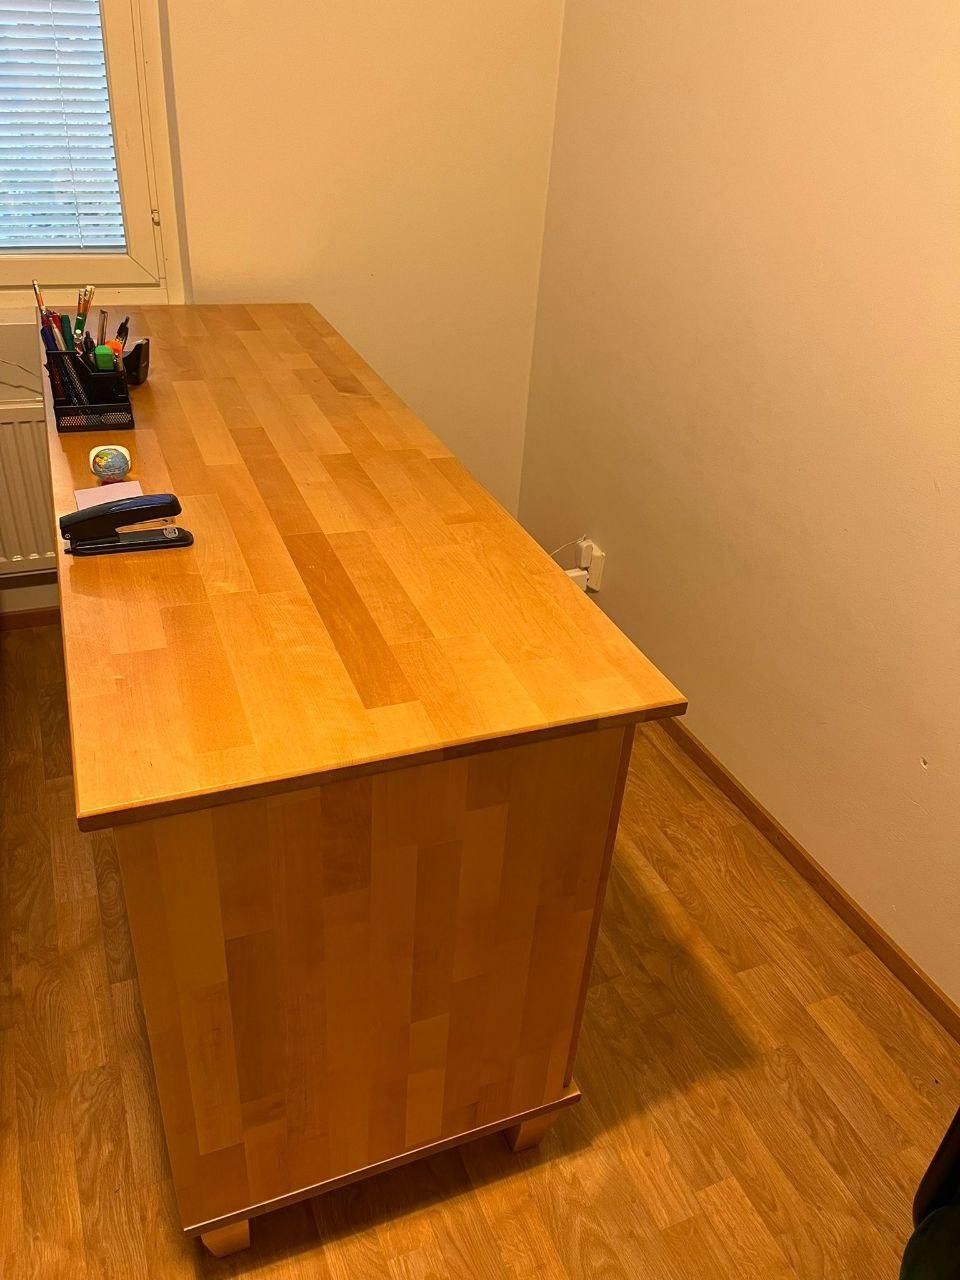 Työpöytä koivu/ Wooden Desk